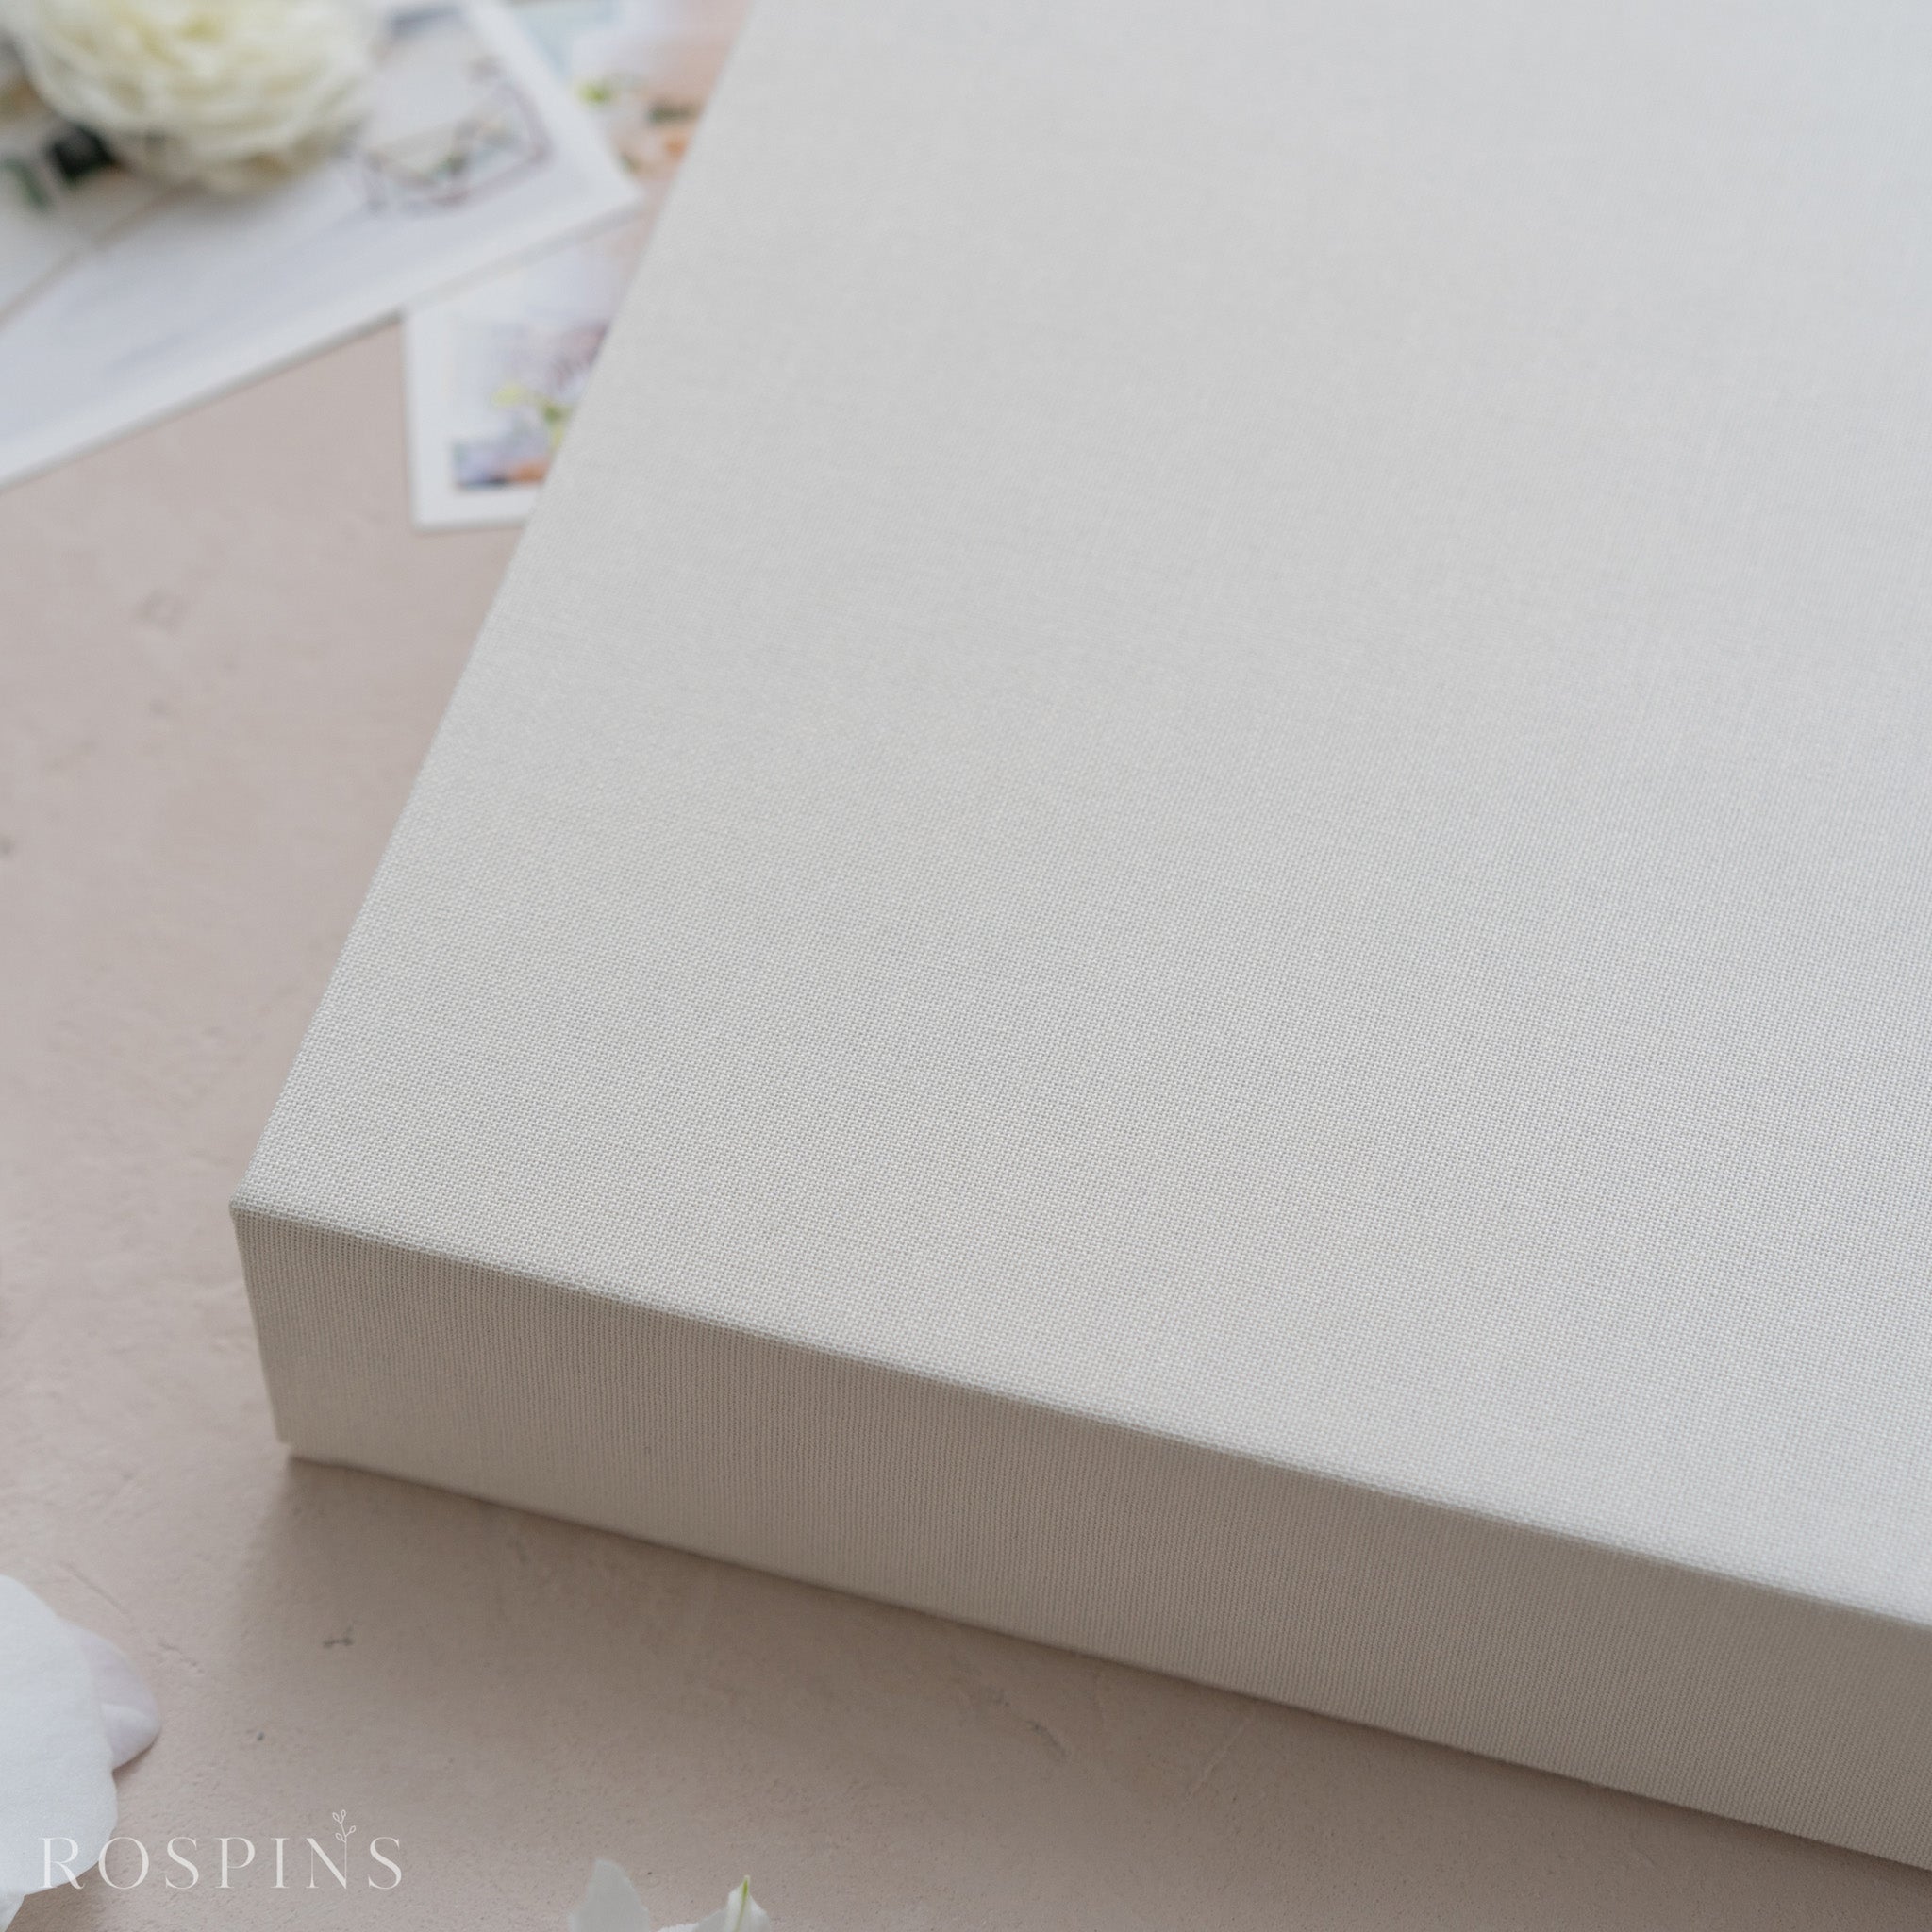 Linen Four-Compartment Photo & USB Box - Creamy White